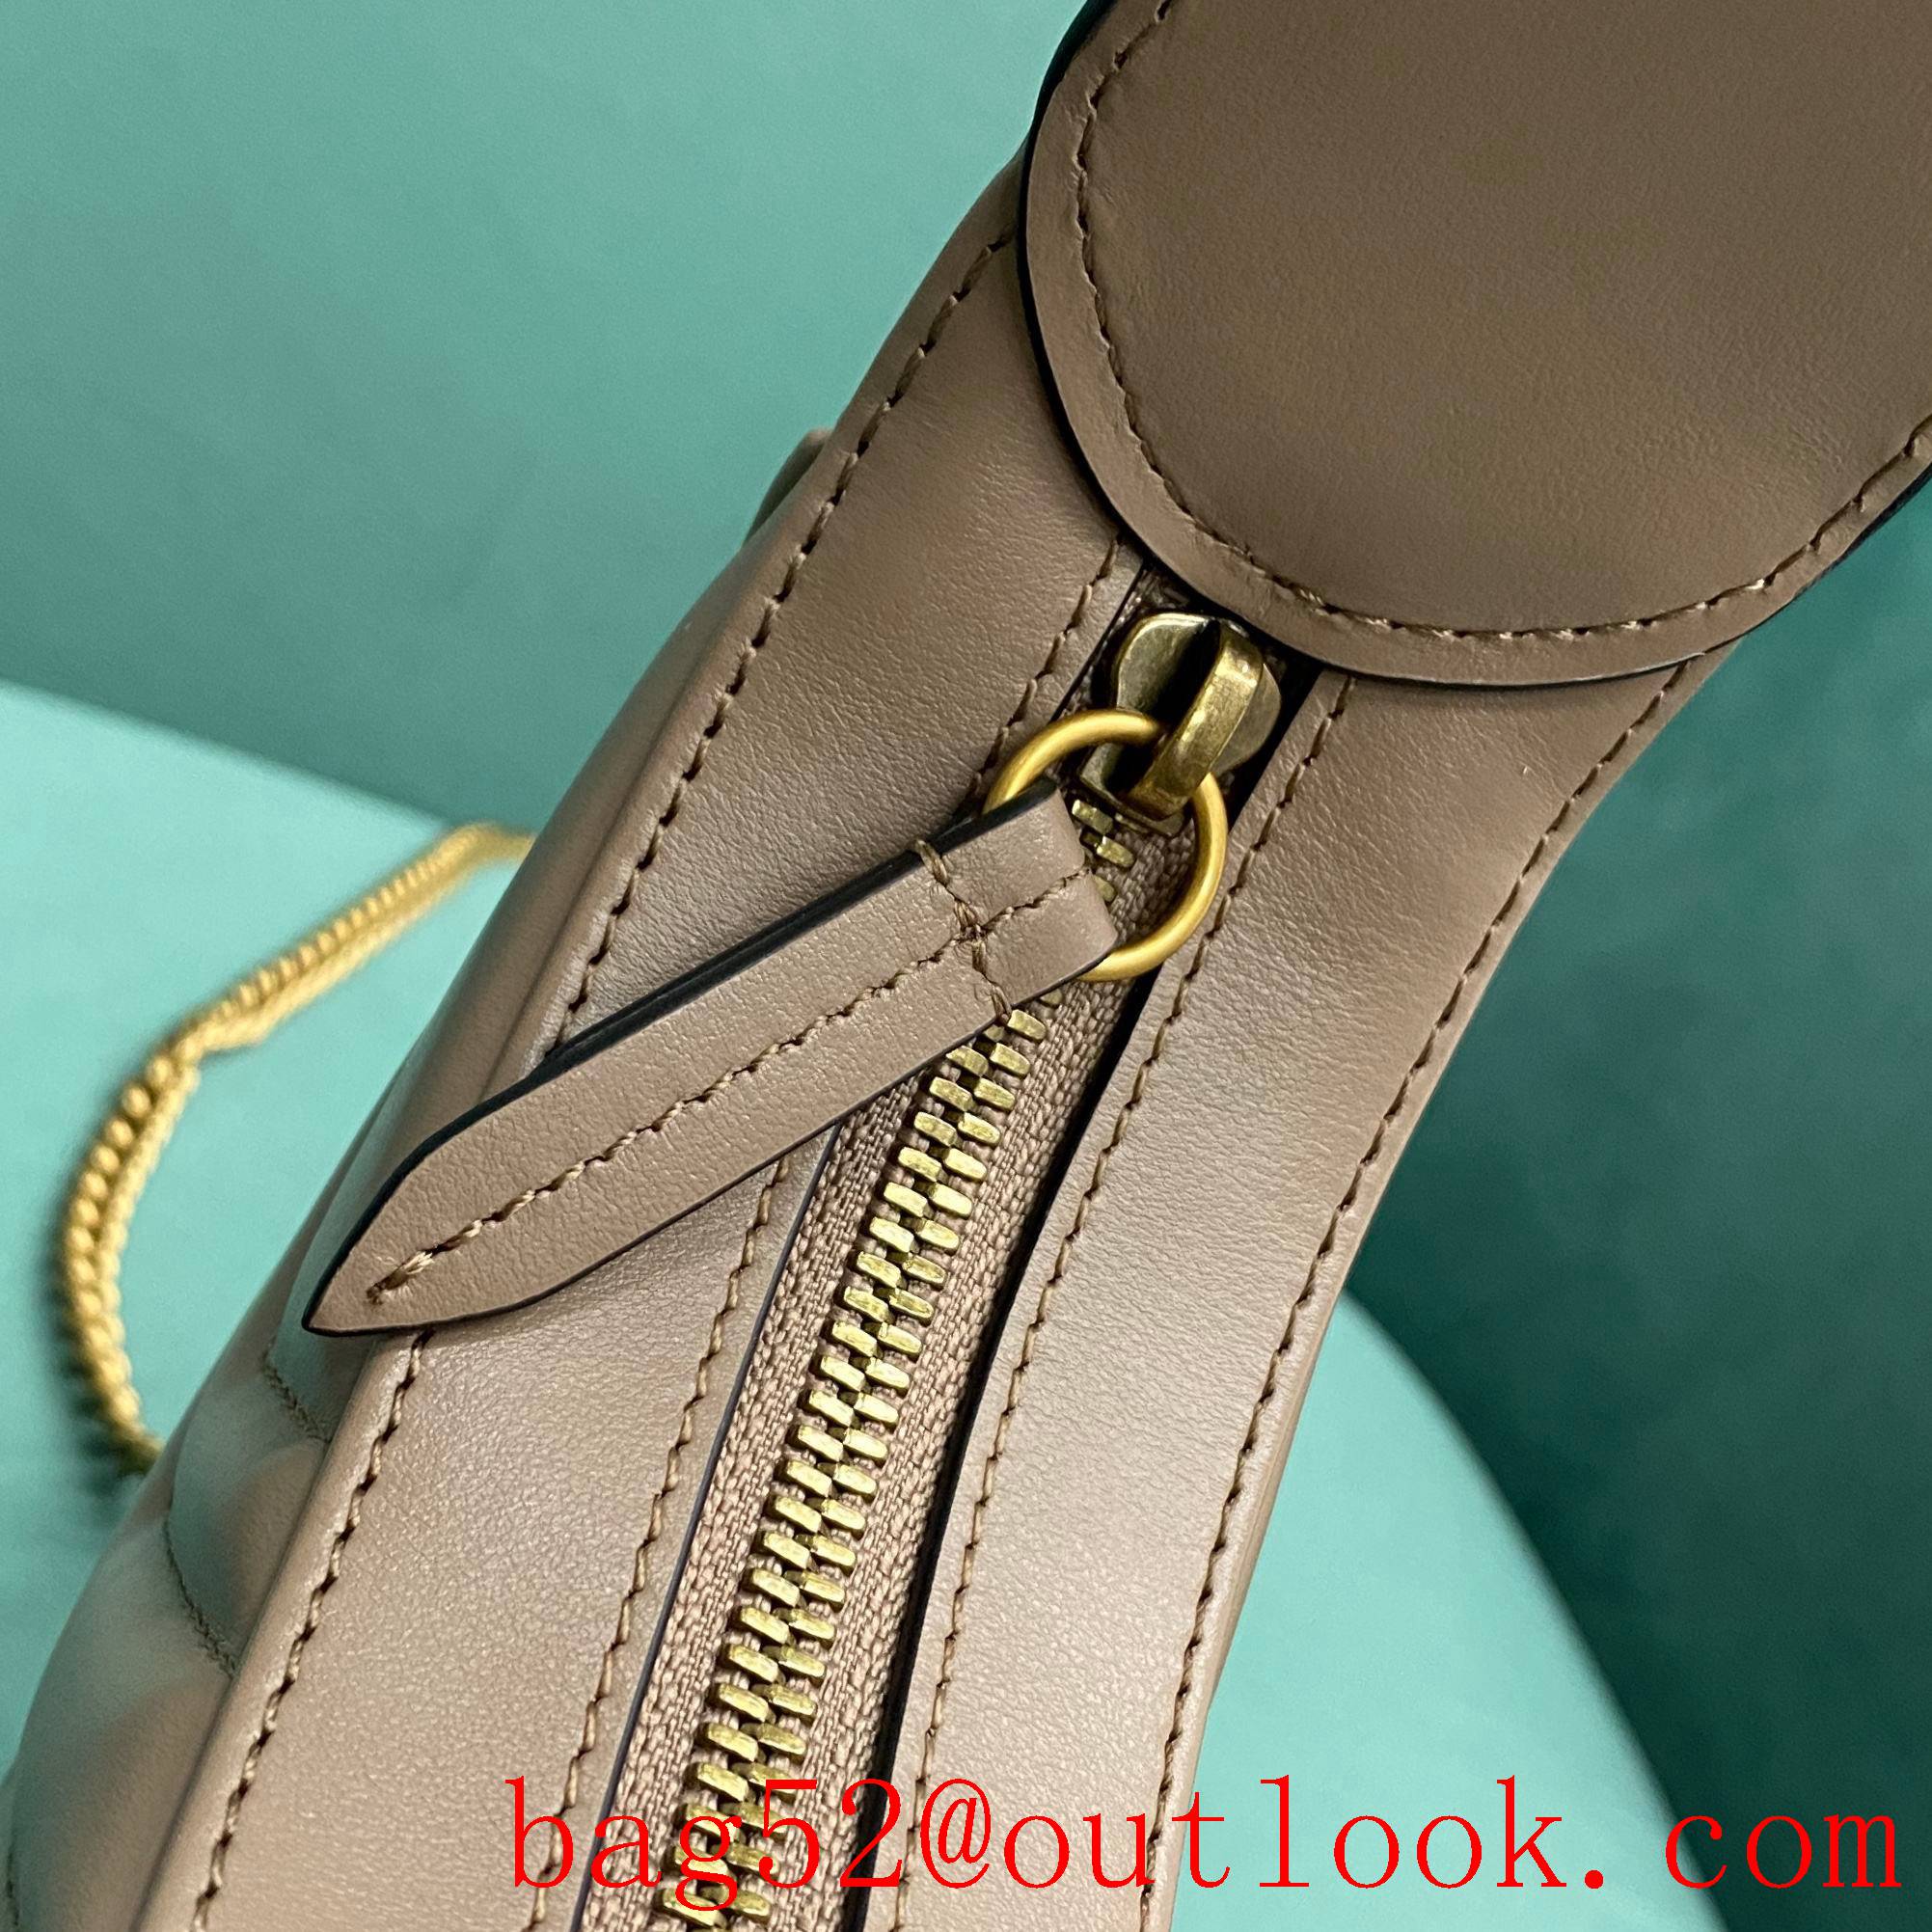 Gucci GG Marmont underarm brown half-moon handbag